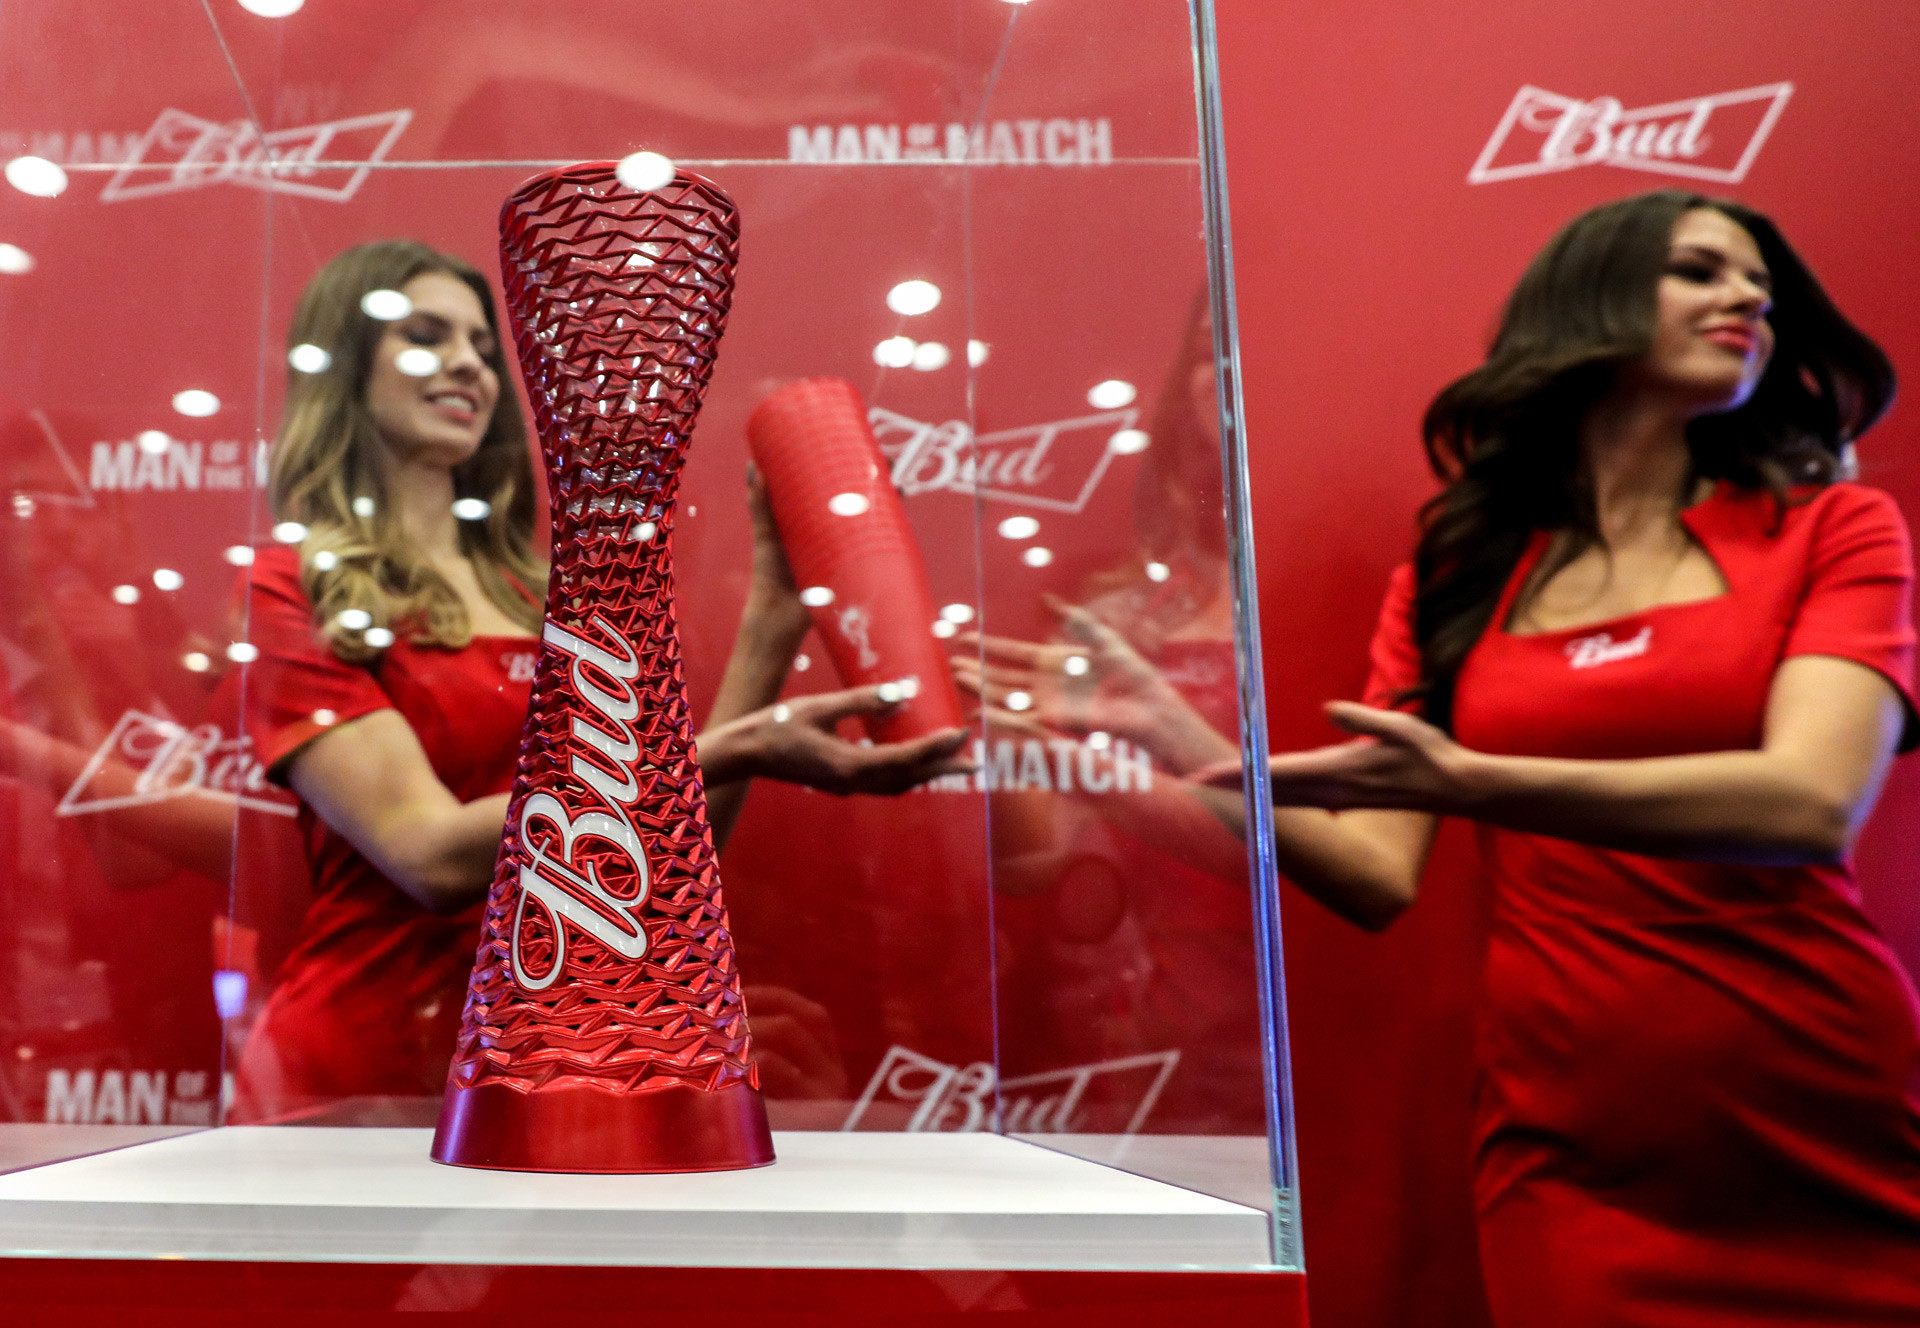 Menjadi sponsor acara internasional besar, seperti Budweiser di FIFA World Cup 2018, juga bisa meningkatkan pengakuan publik secara drastis di negara manapun, termasuk Rusia.